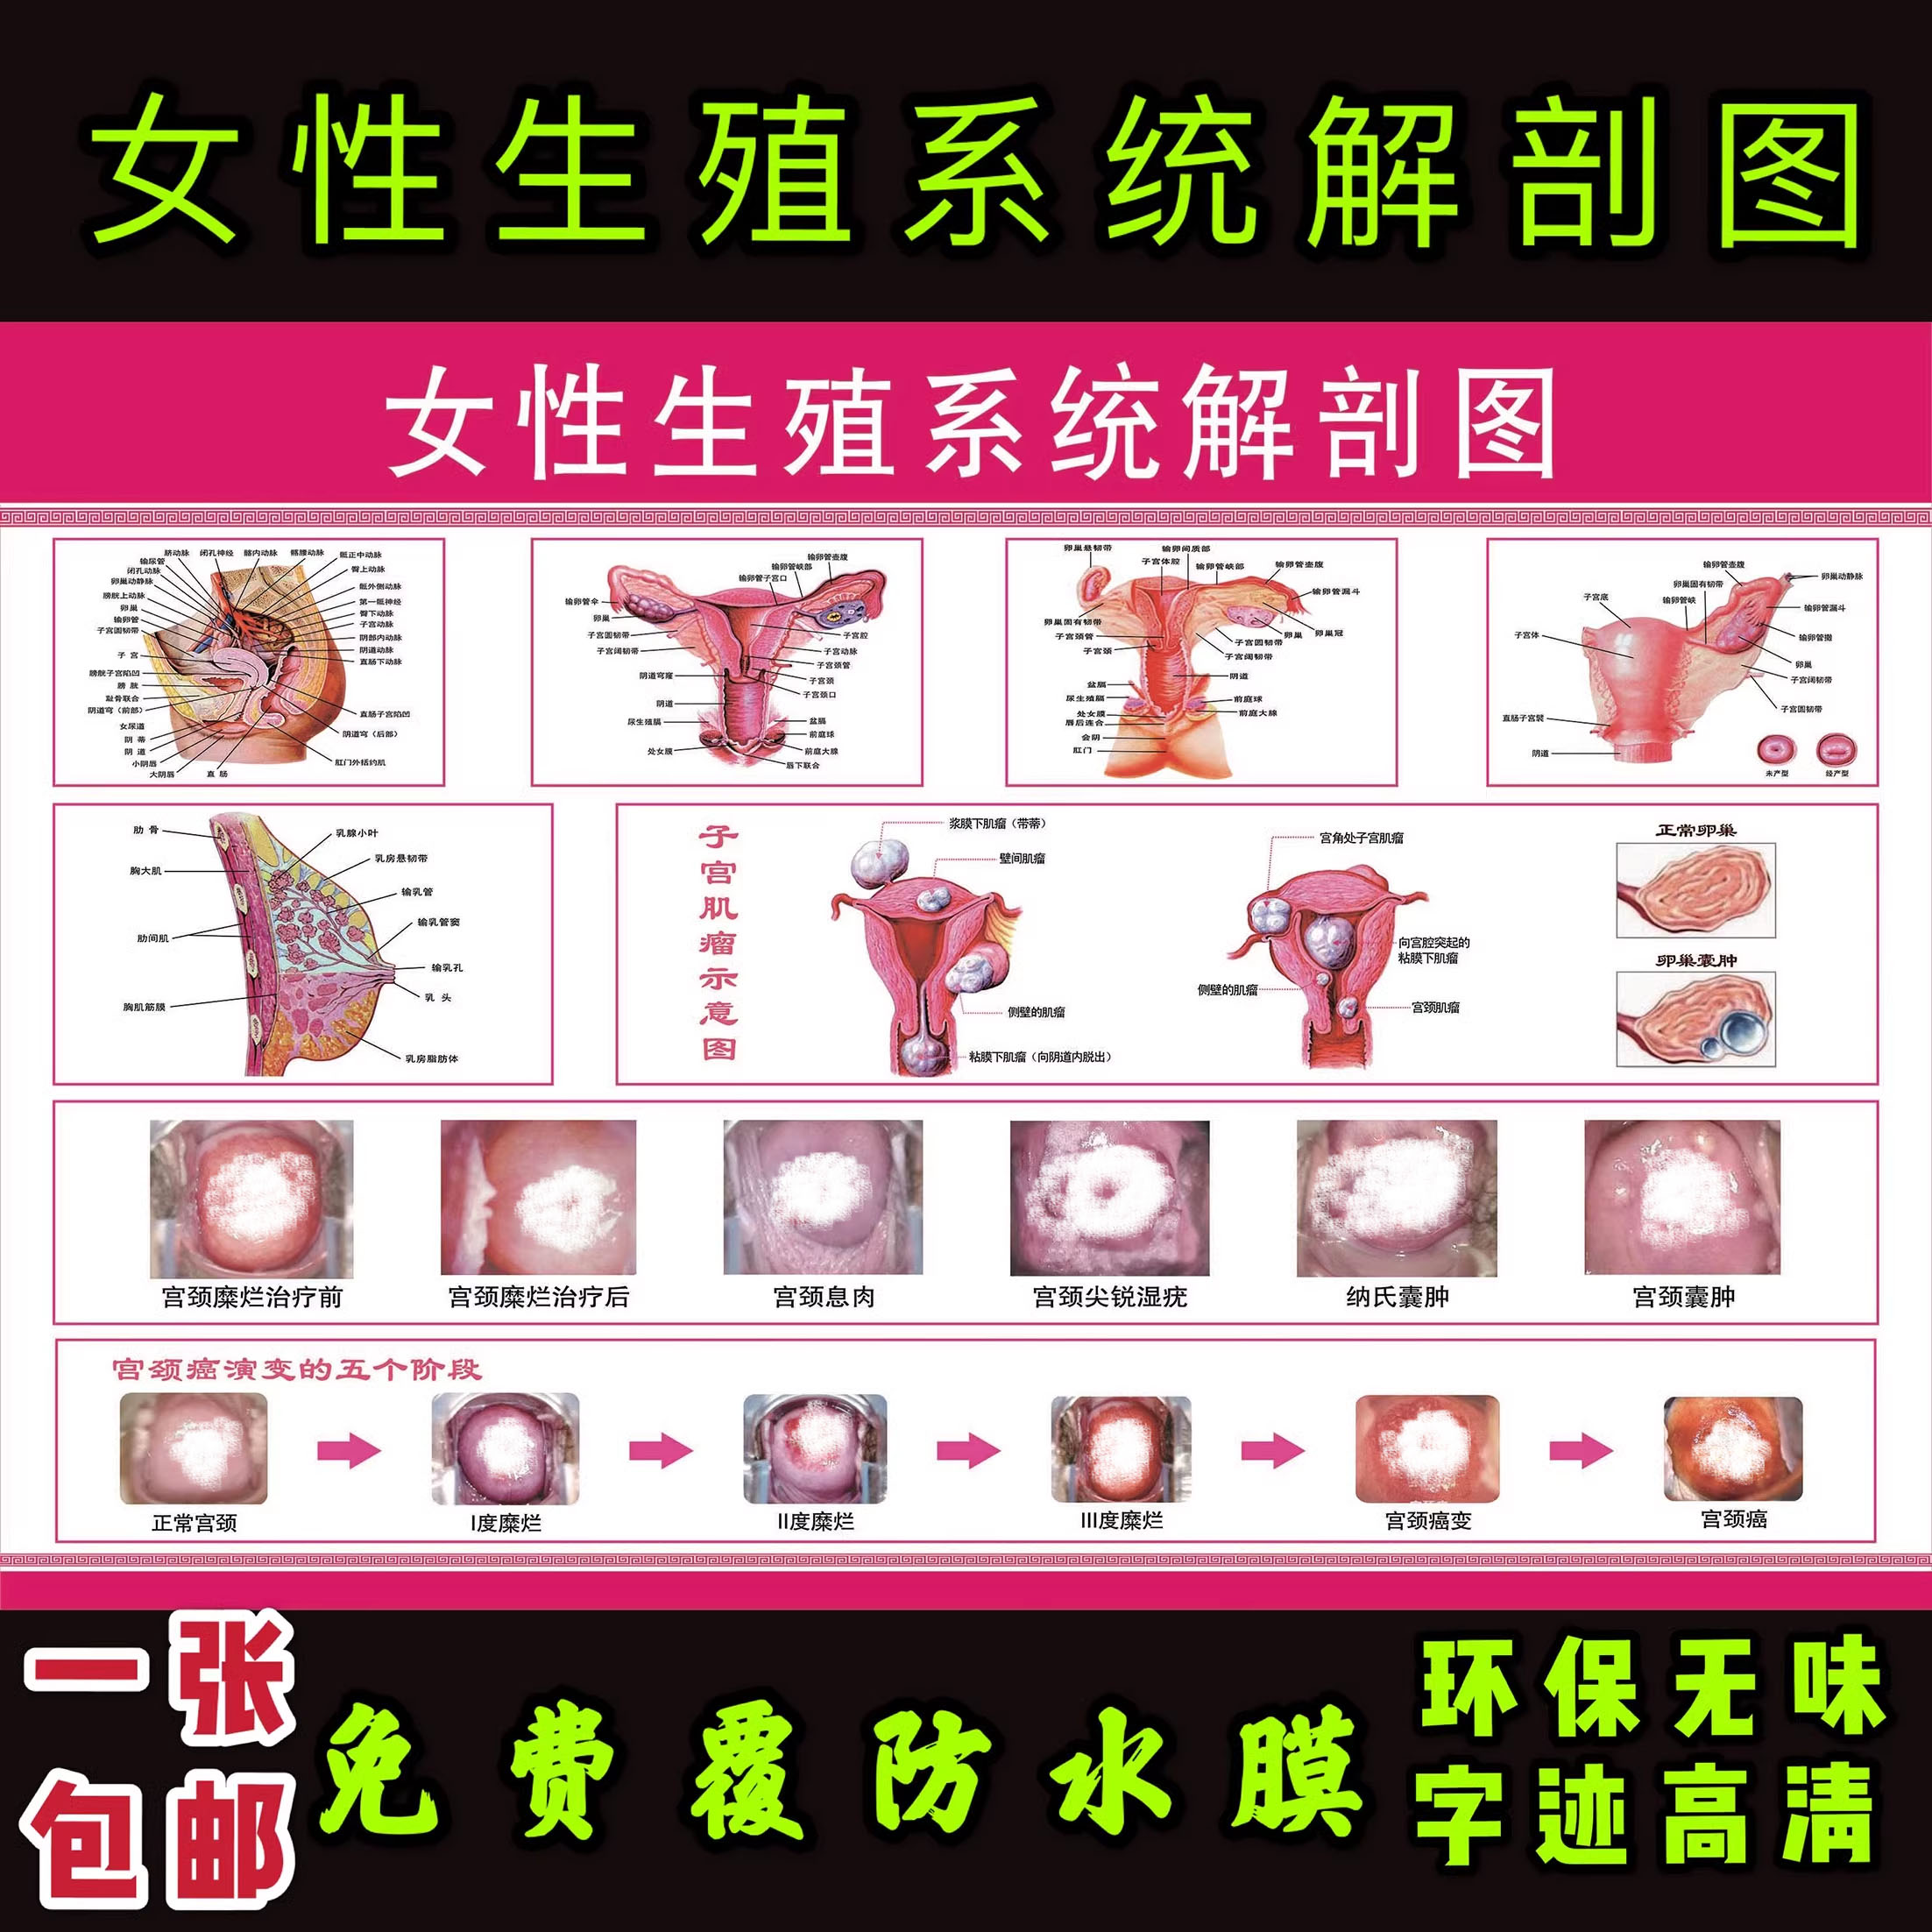 女性生殖器系统解剖图 医院宣传挂图子宫 妇科海报宫颈疾病示意图